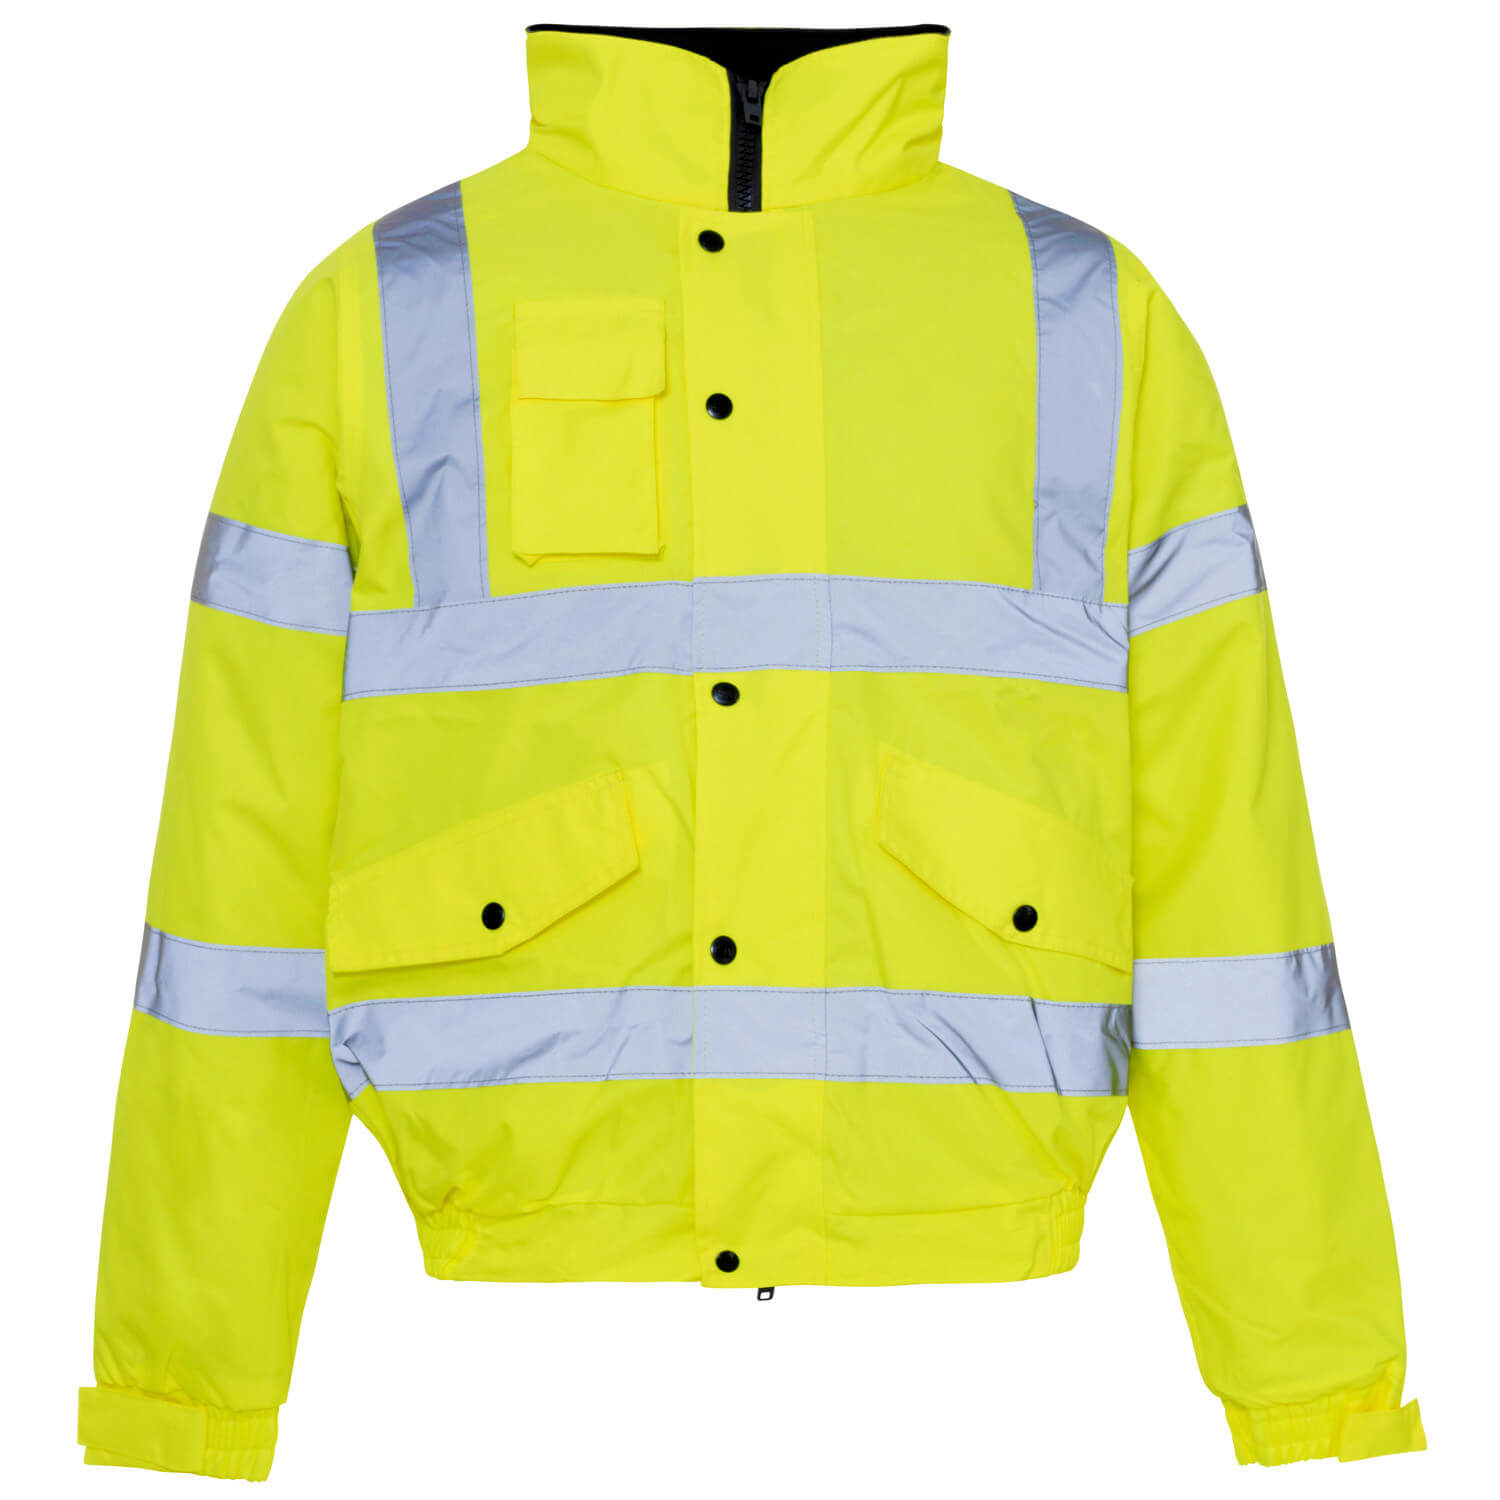 Reflective-Traffic-Jacket-for-Unisex-Adult-Safety-Clothing